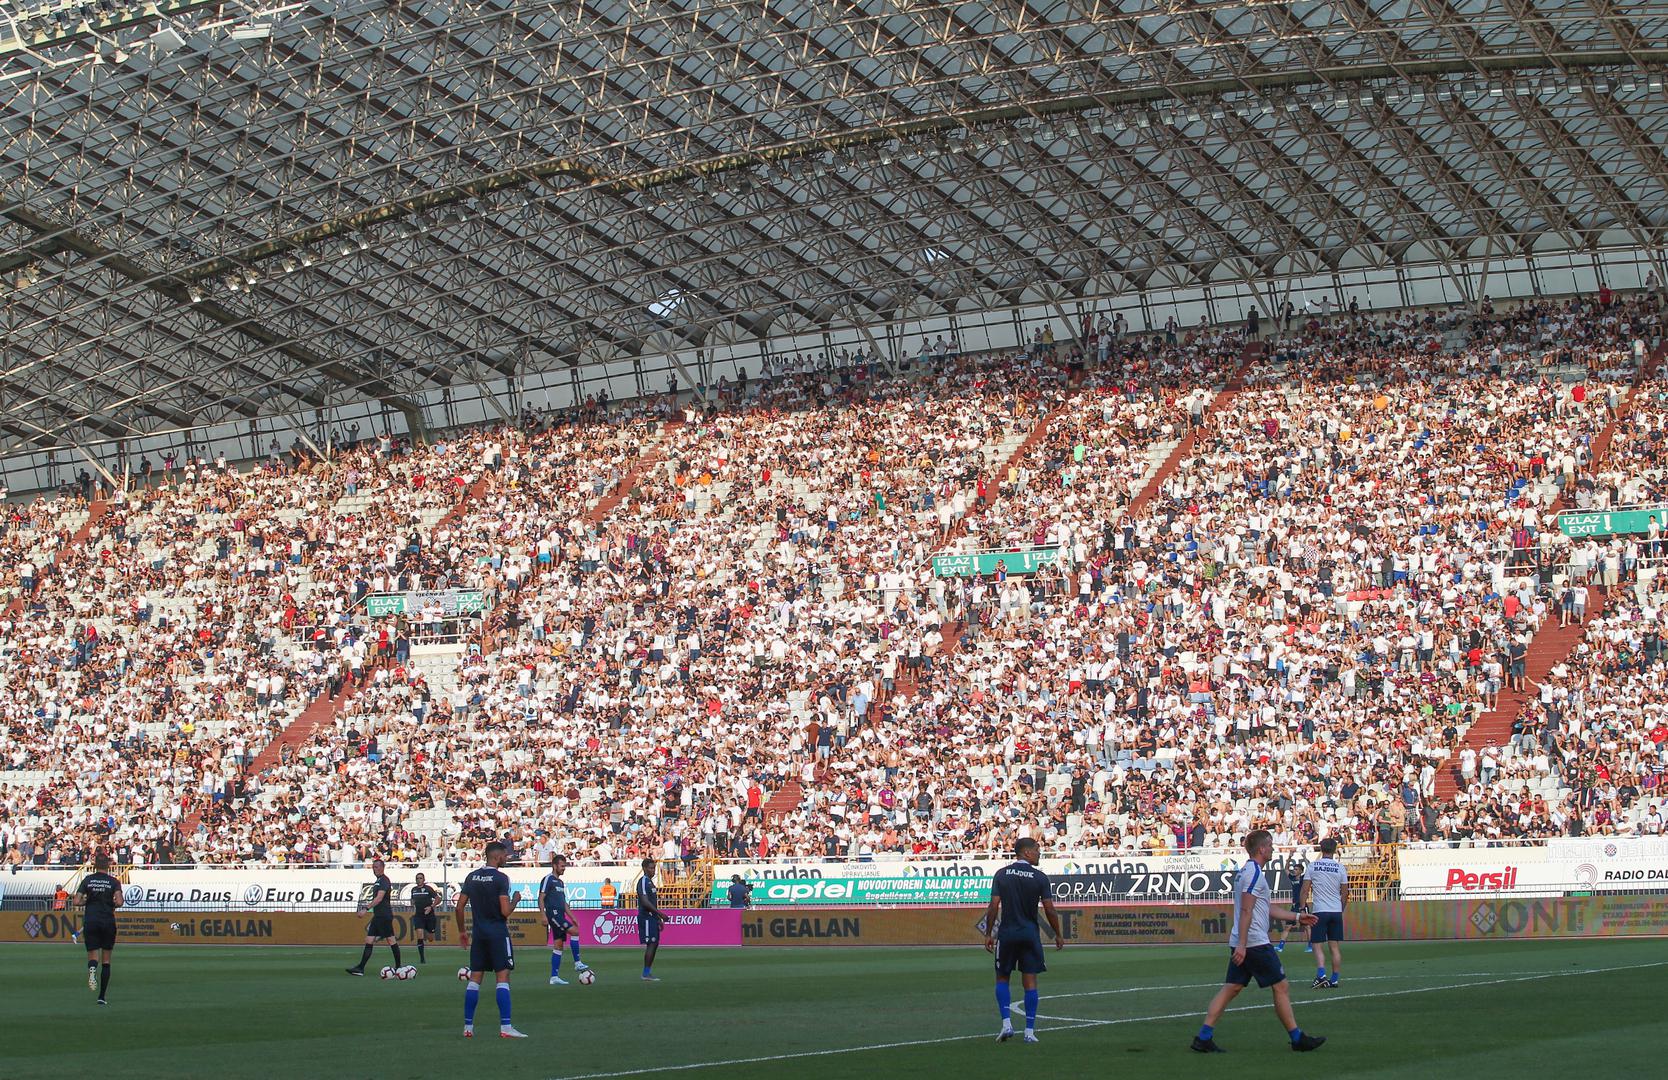 Atmosfera na Poljudu bila je sjajna, stadion je bio rasprodan i skupilo se više od 30 tisuća gledatelja

